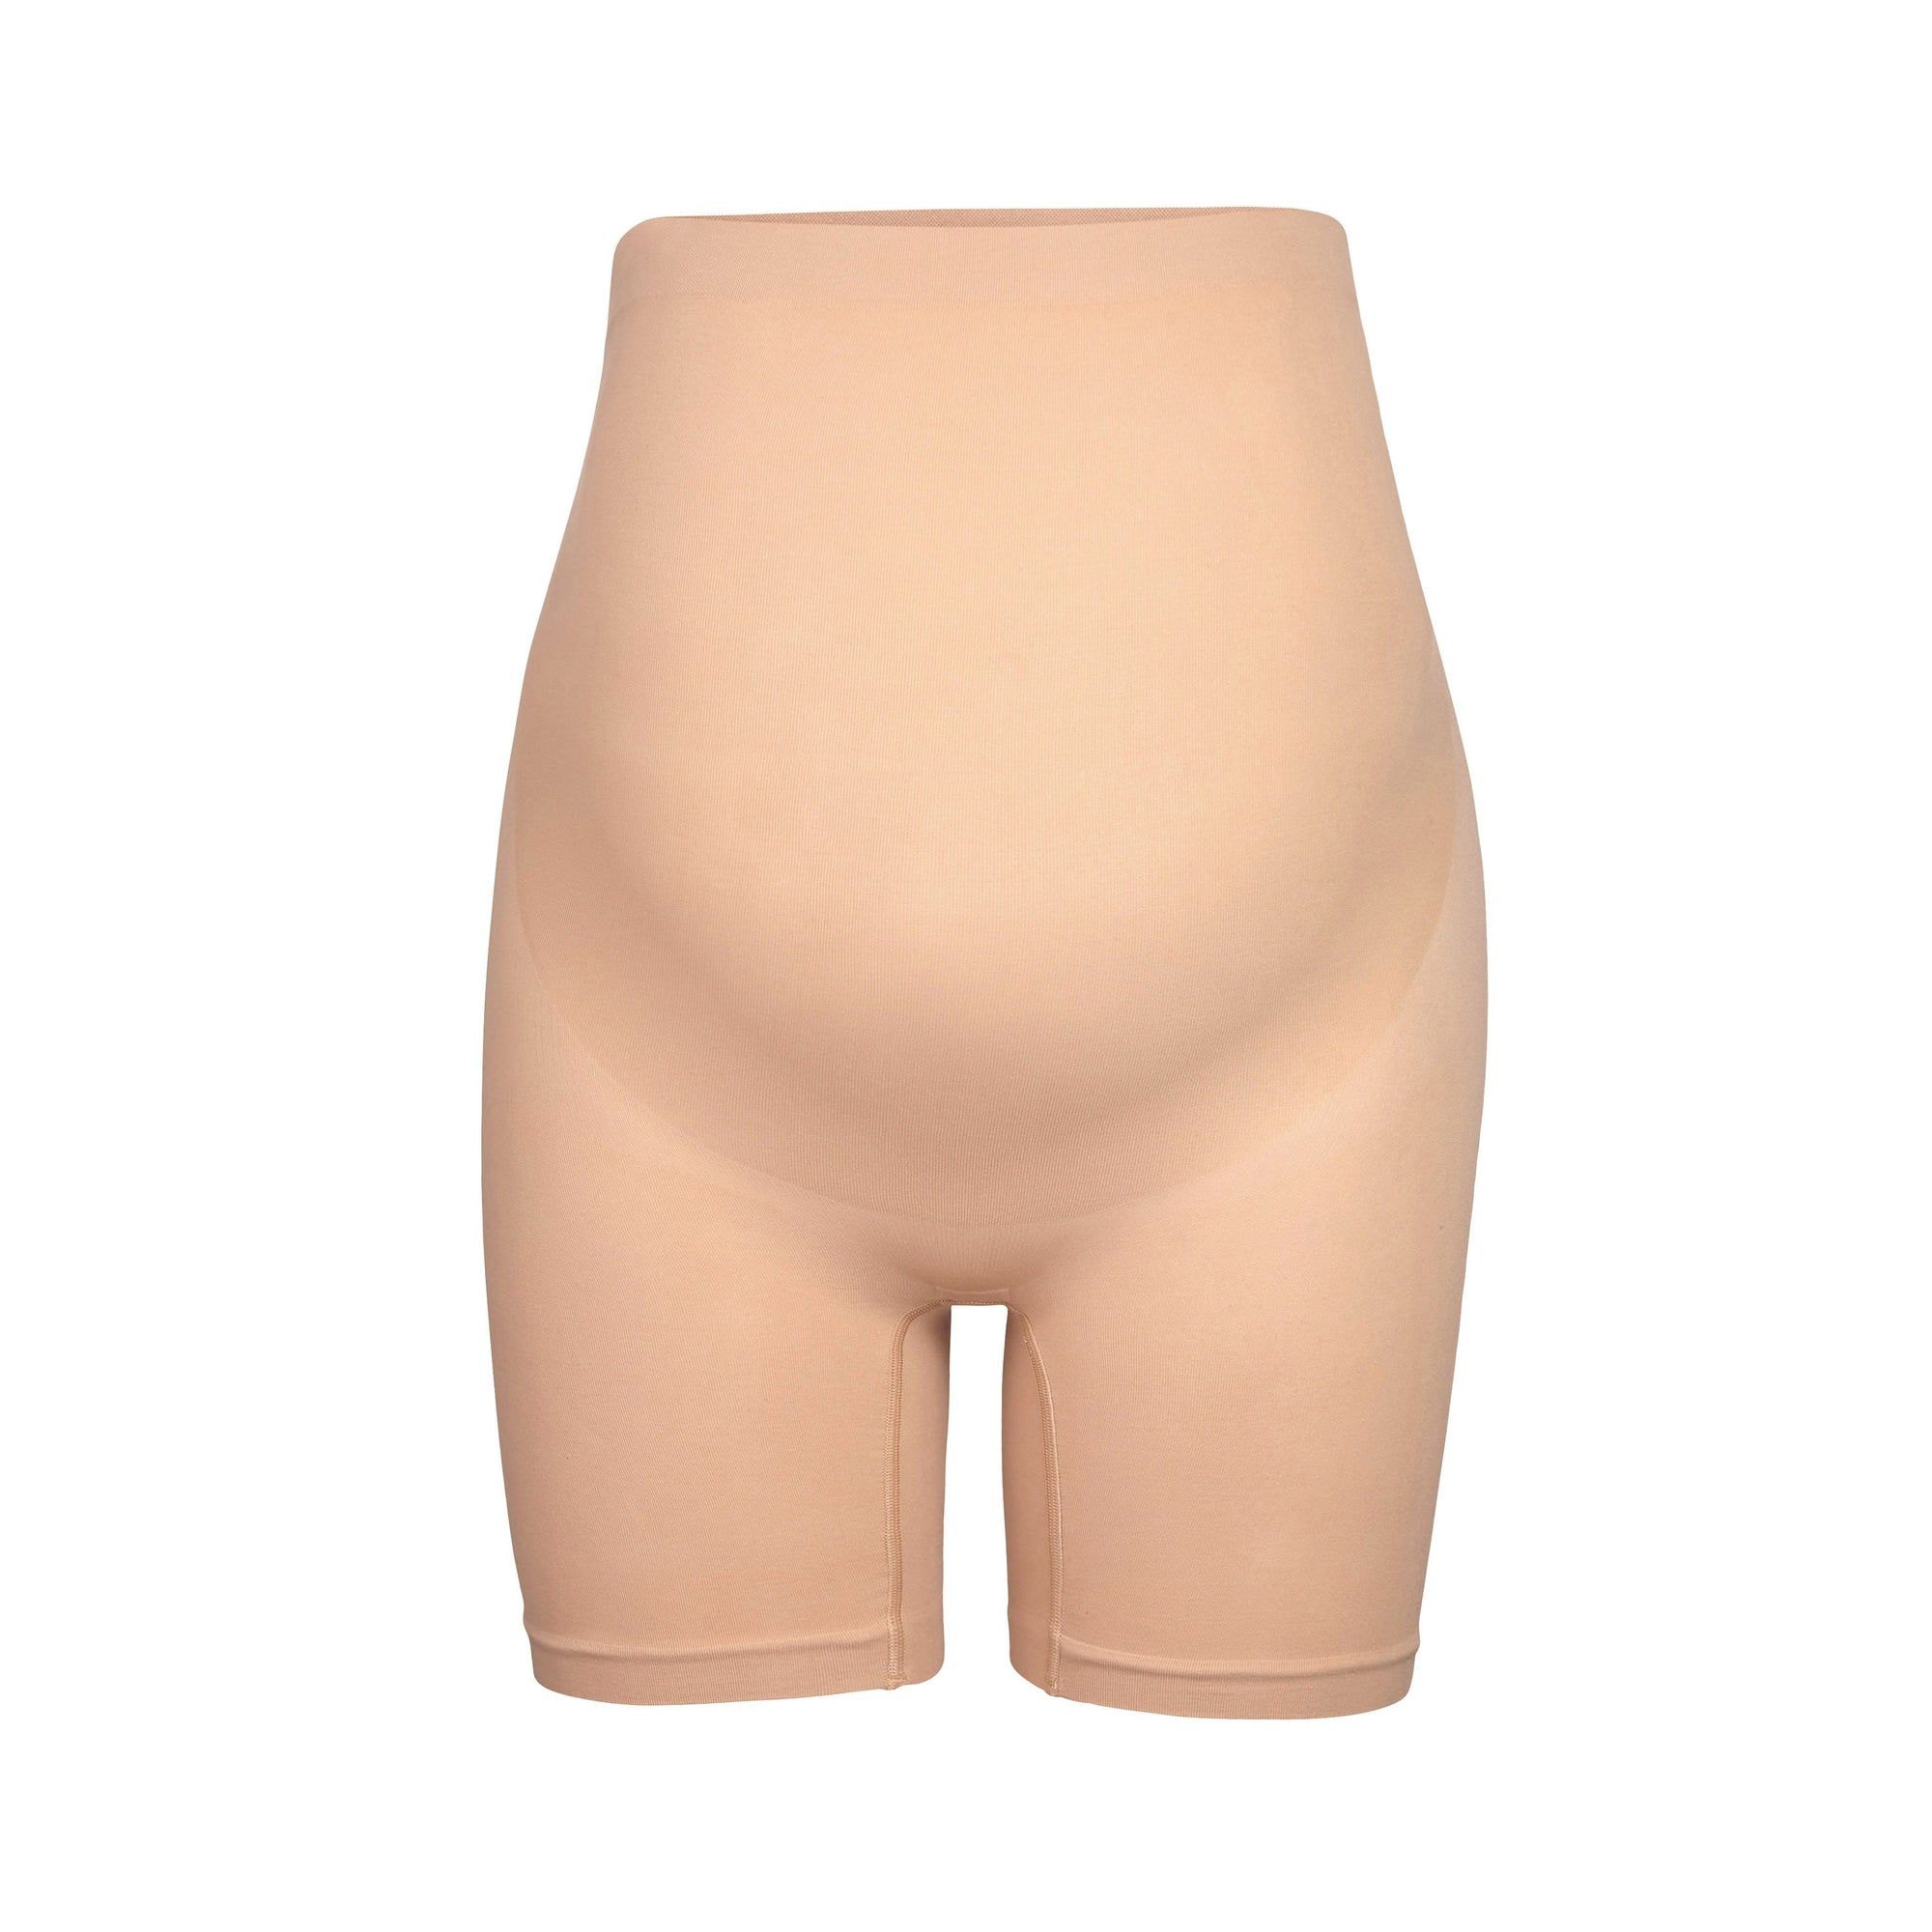 ALING Maternity Shorts Panties Shapewear Seamless Thigh Shaper and Support, Maternity  Shapewear Belly Support Mid-Thigh Short 